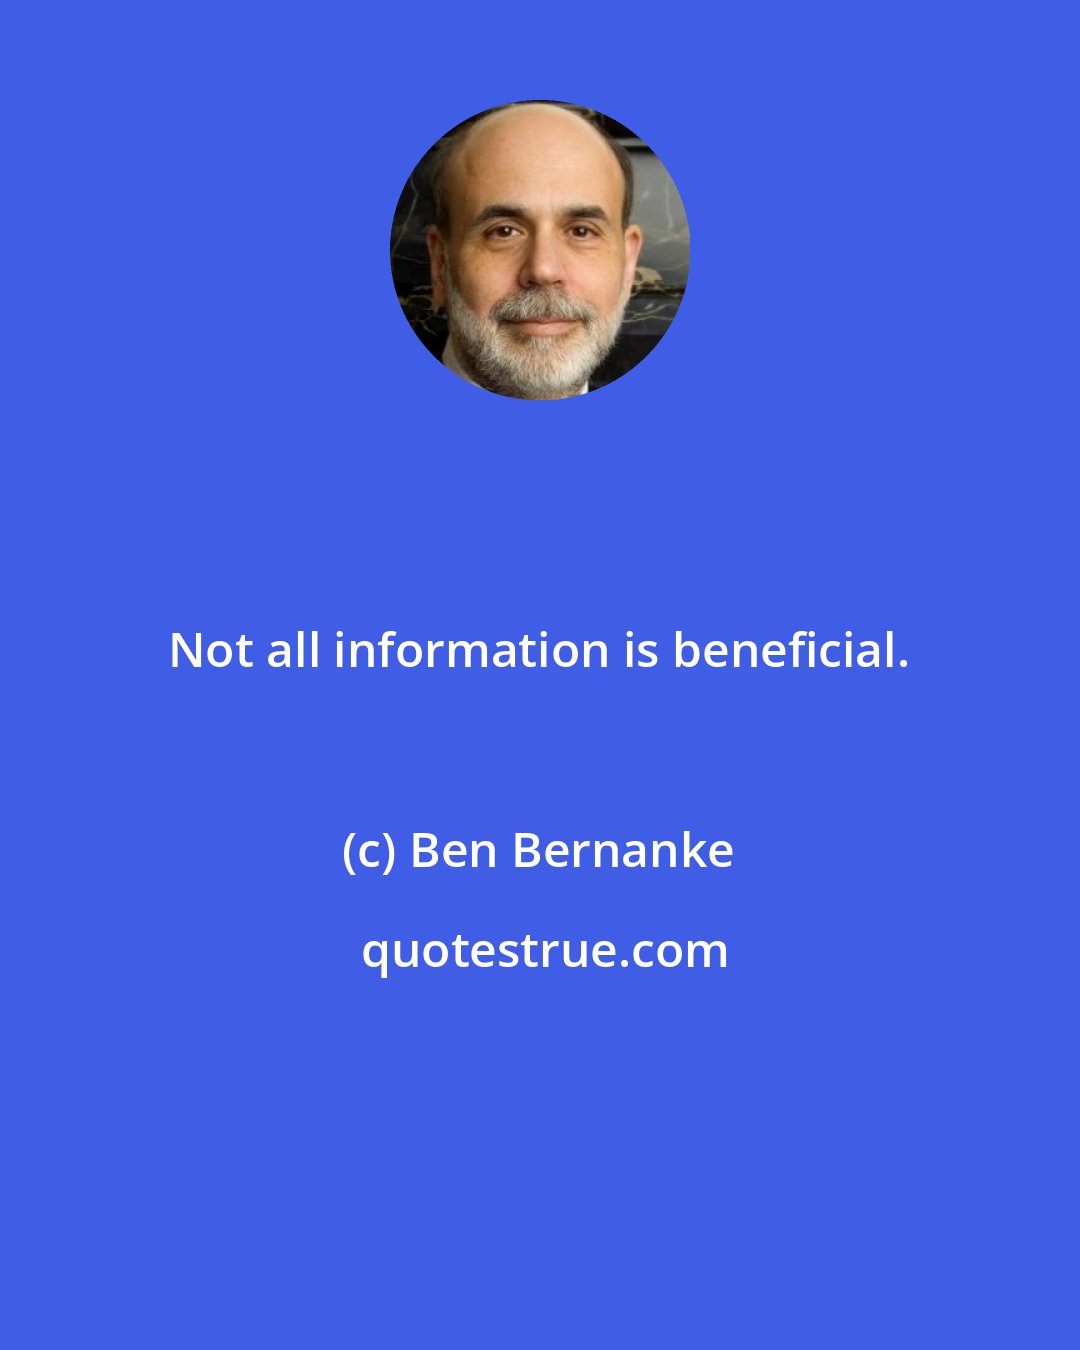 Ben Bernanke: Not all information is beneficial.